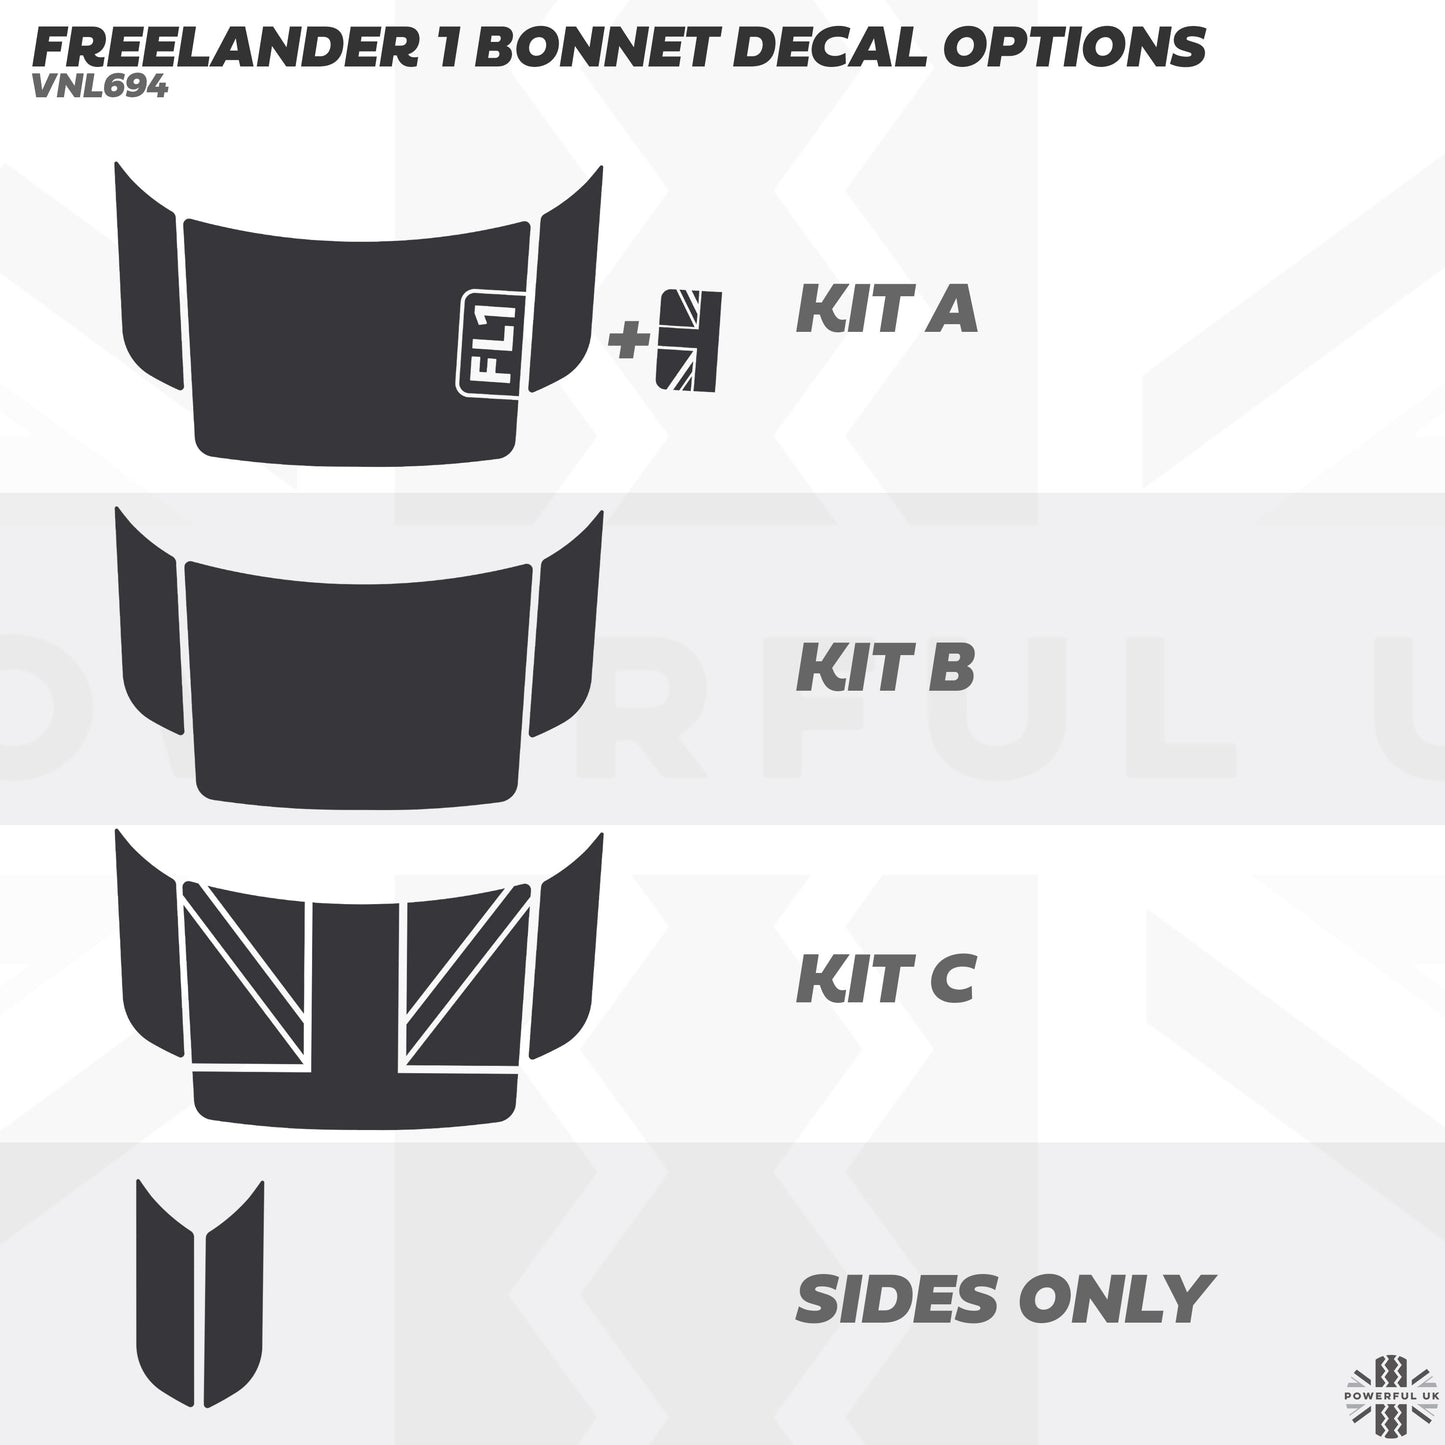 Bonnet Decal Set - FL1 & Union Jack Inserts - for Land Rover Freelander 1